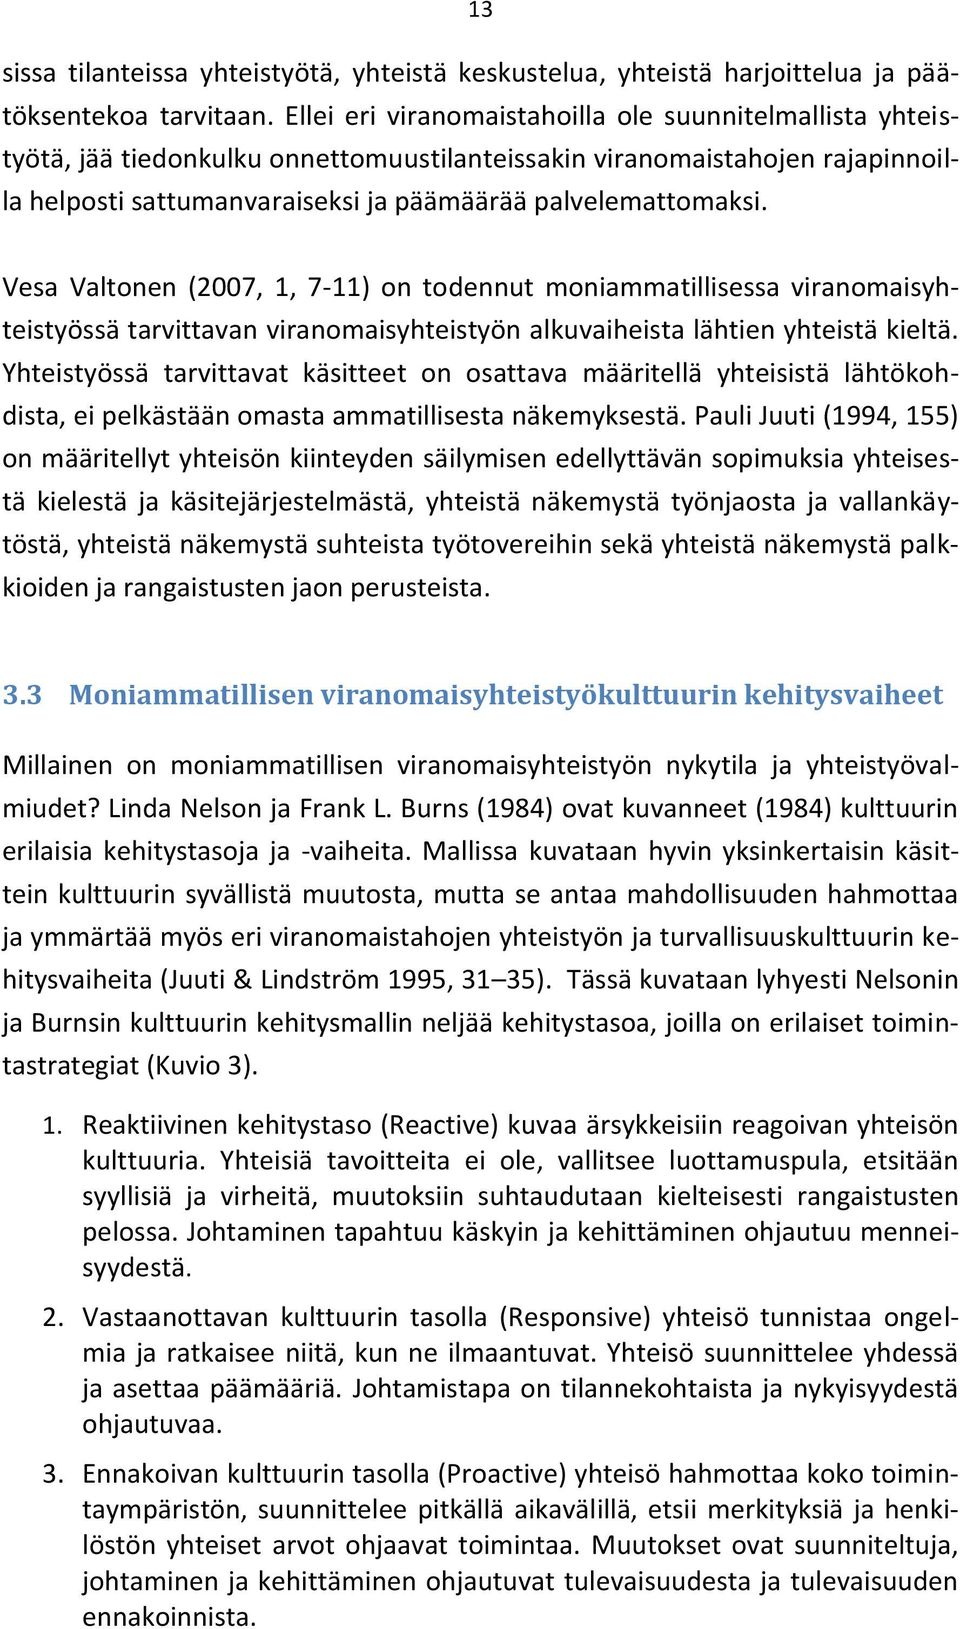 Vesa Valtonen (2007, 1, 7-11) on todennut moniammatillisessa viranomaisyhteistyössä tarvittavan viranomaisyhteistyön alkuvaiheista lähtien yhteistä kieltä.